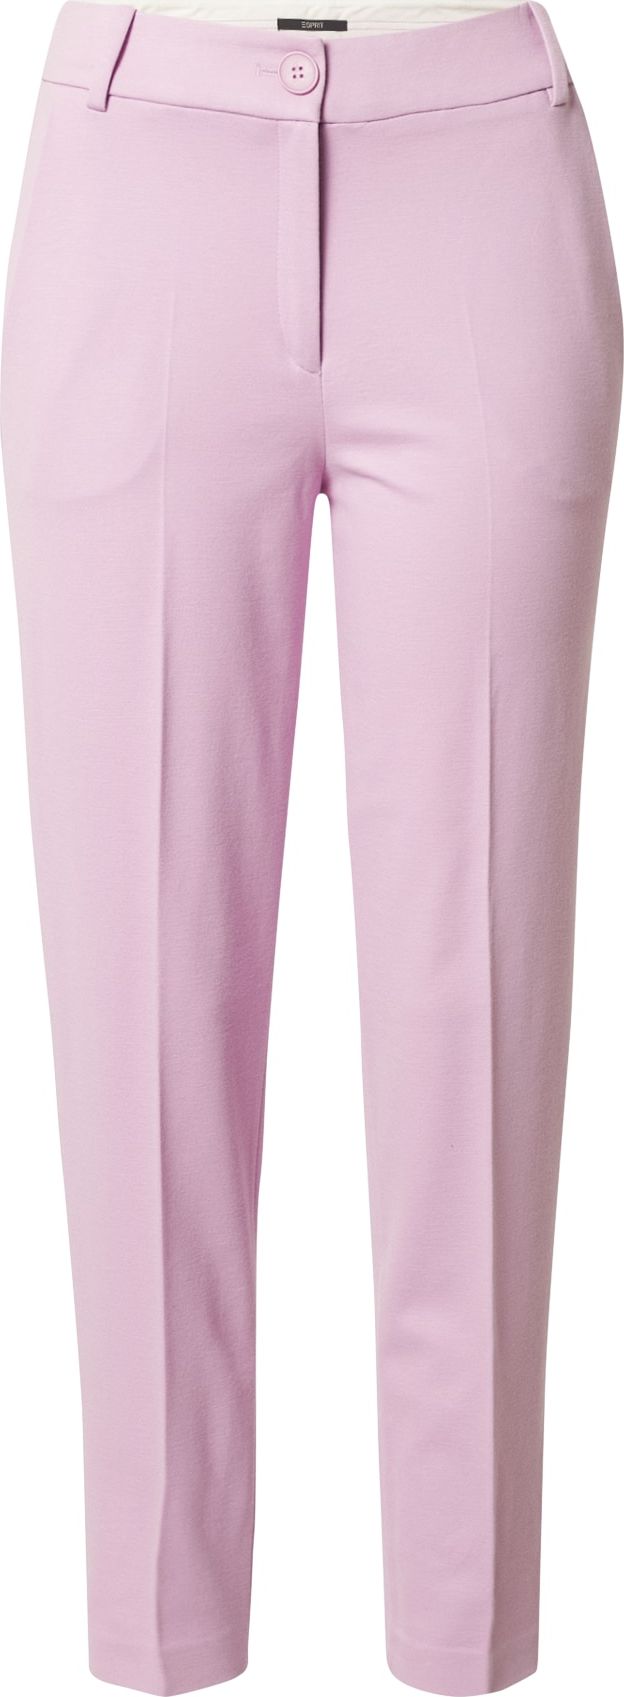 Esprit Collection Kalhoty s puky fialová